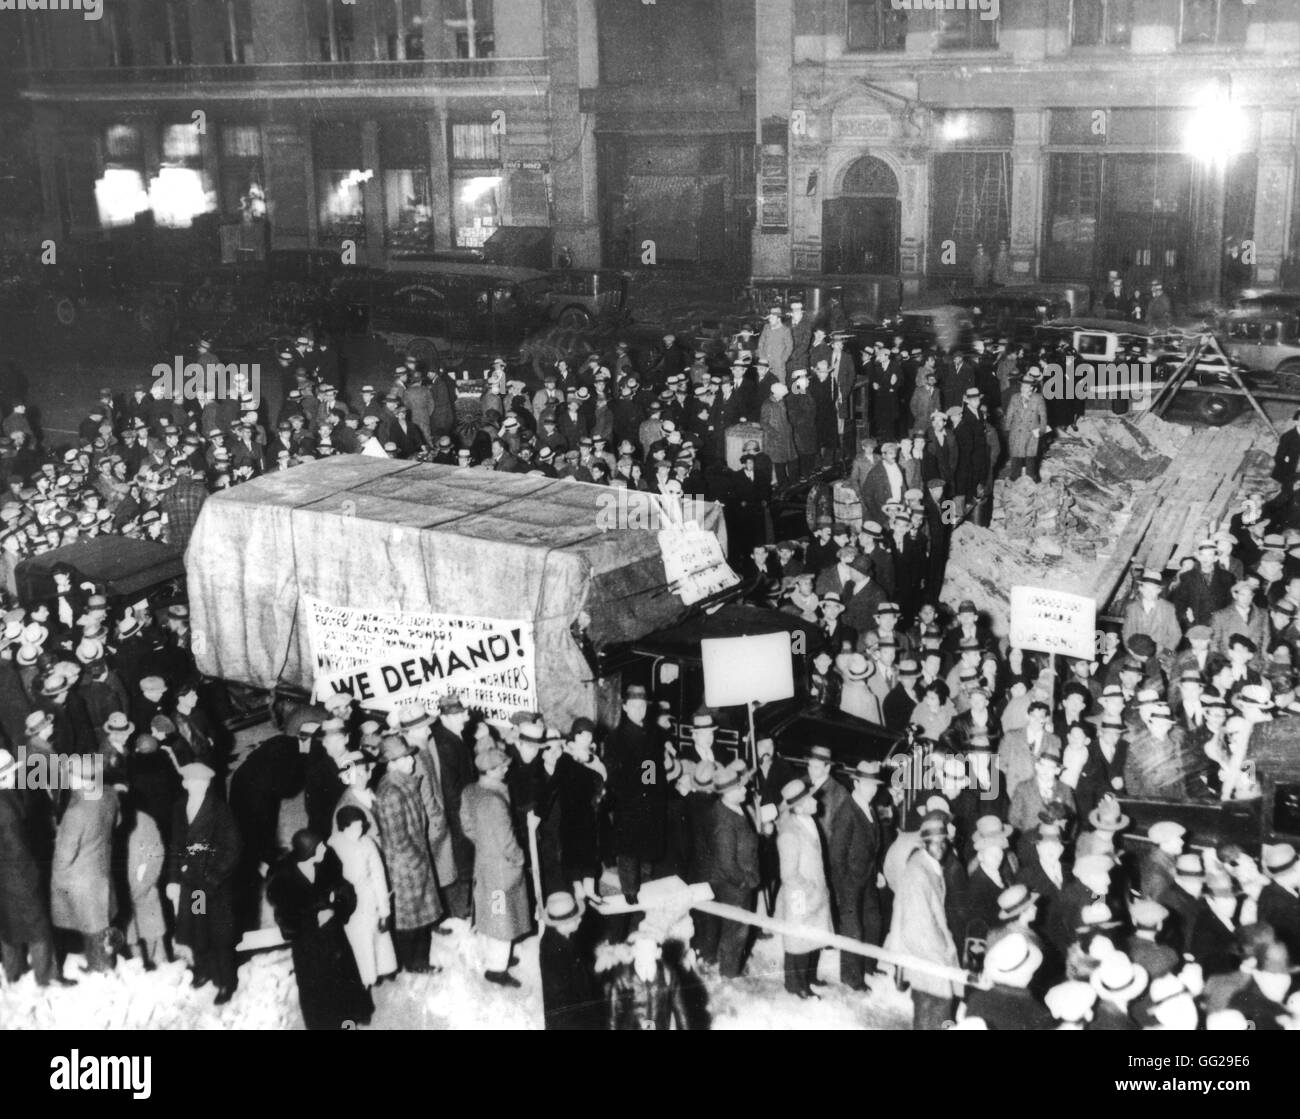 Les délégués de 1 500 marcheurs de la Faim "' de New Haven et Boston arrivant à New York pour une réunion à Union Square Janvier 1931 United States National archives. Washington Banque D'Images